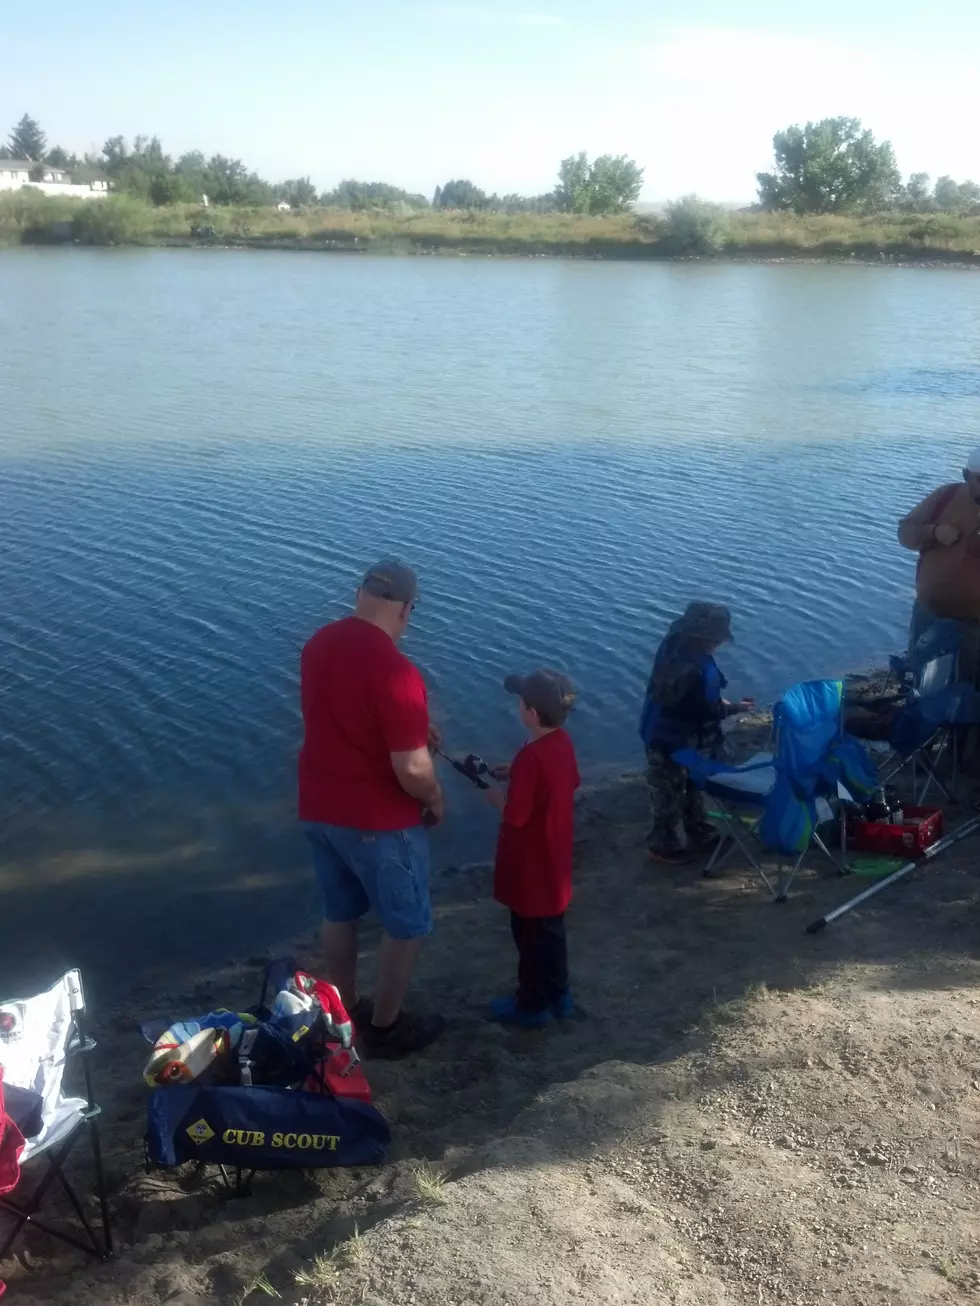 Memorial Derby In Casper Honors Little Boy’s Love Of Fishing